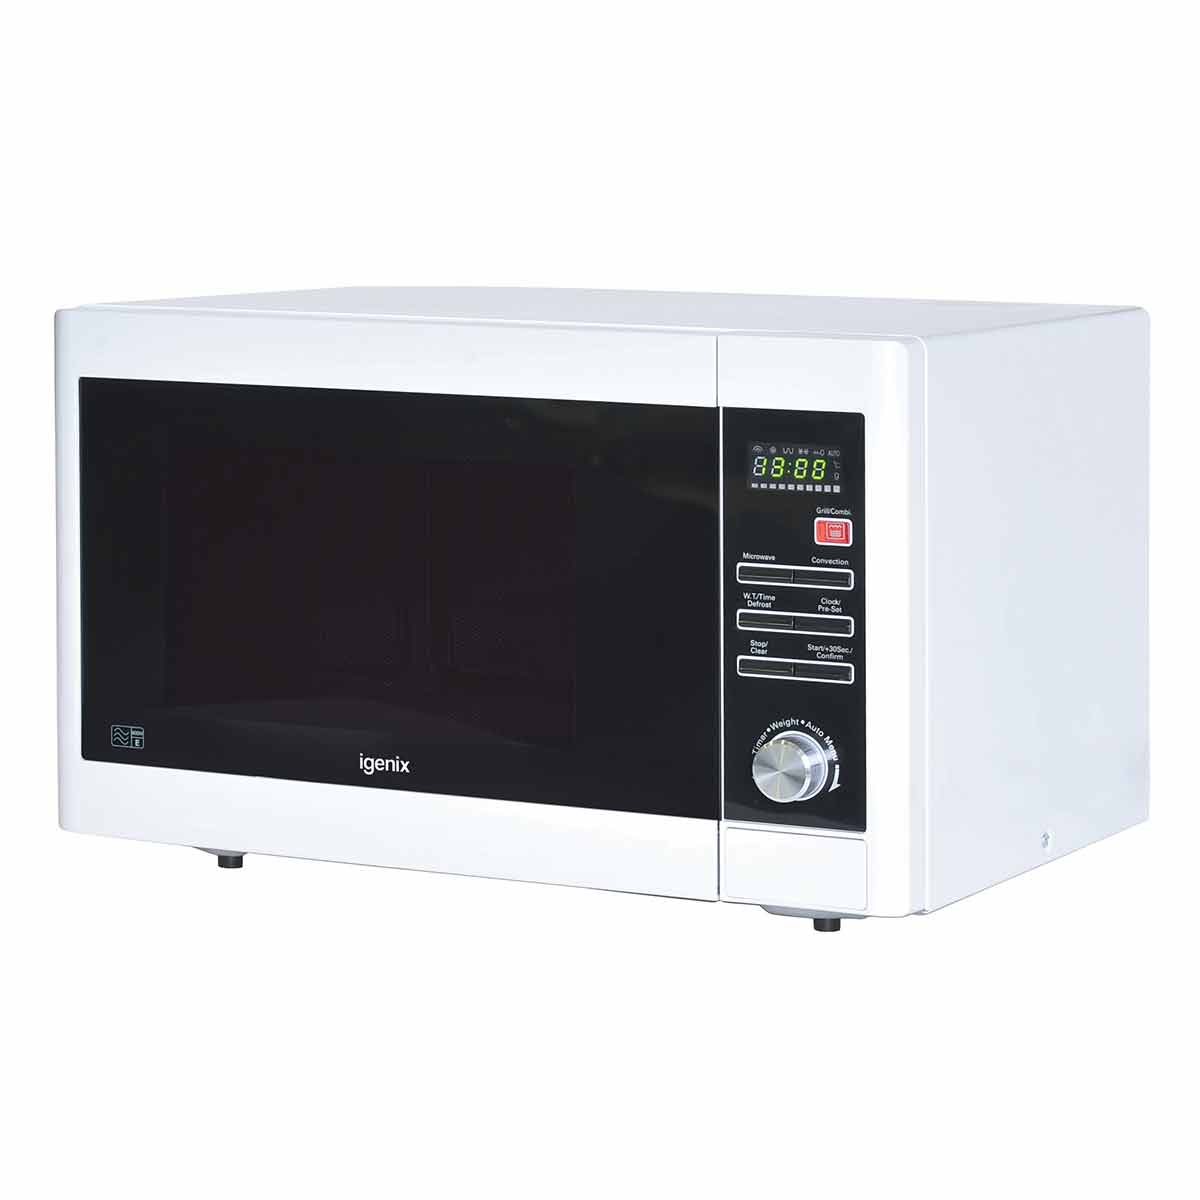 Igenix Digital Microwave 30 Litre 900W, white